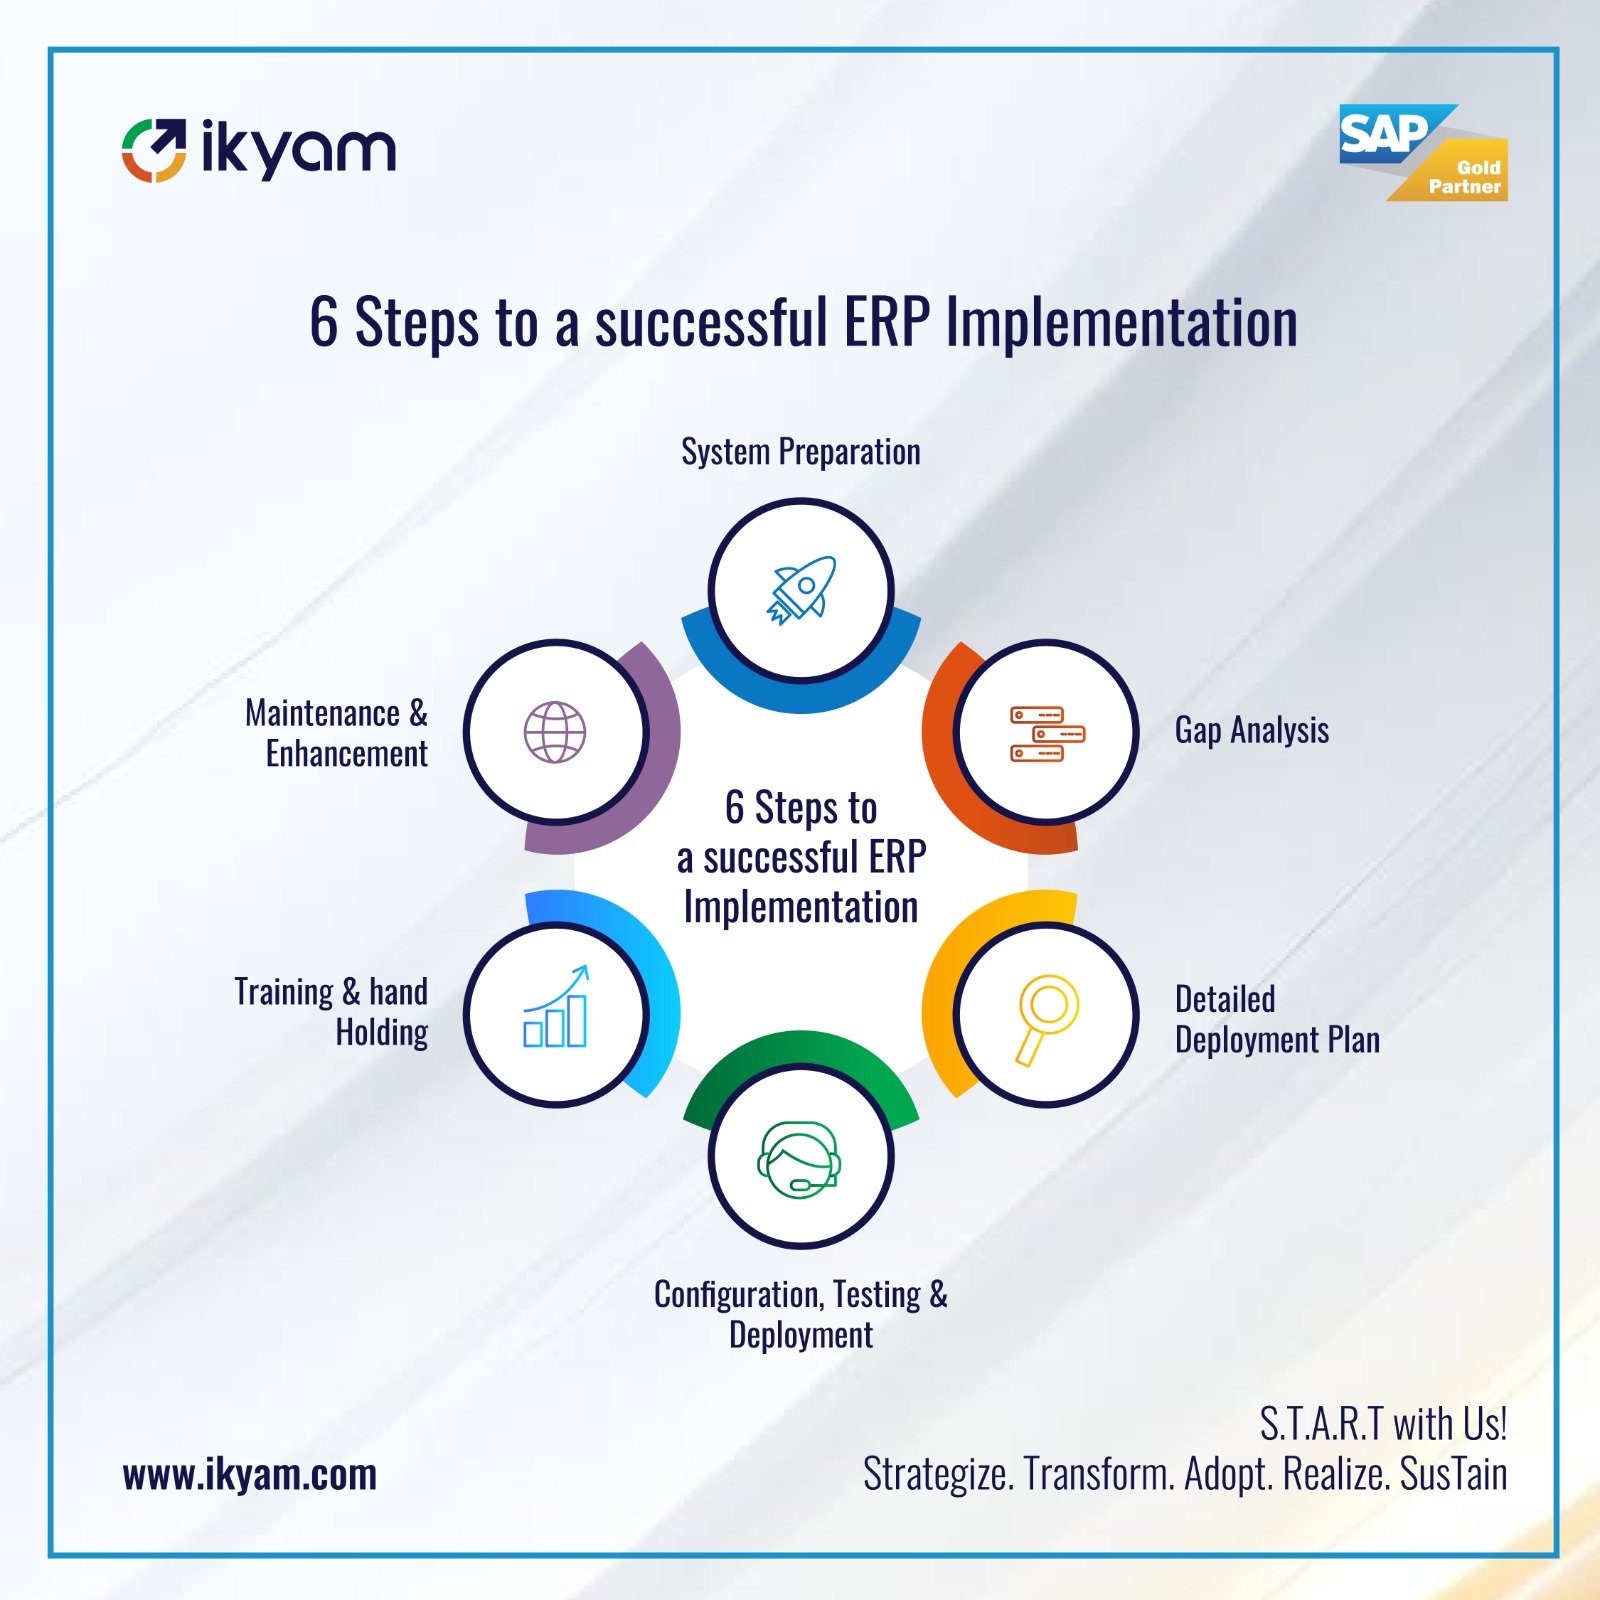 SAP Implementation Partner